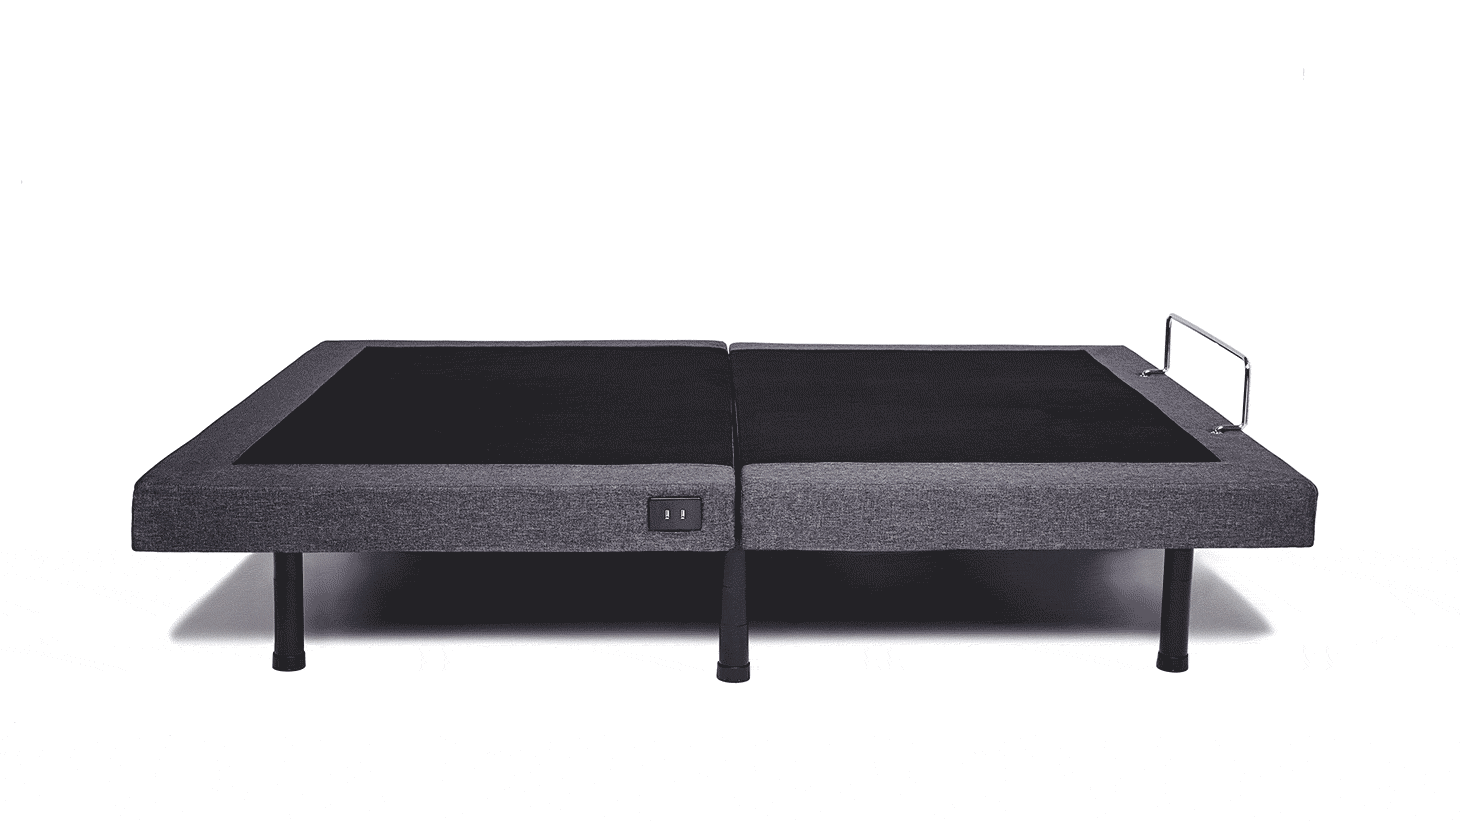 Split King Size Adjustable Bed Frames, How To Use Adjustable Base With Bed Frame